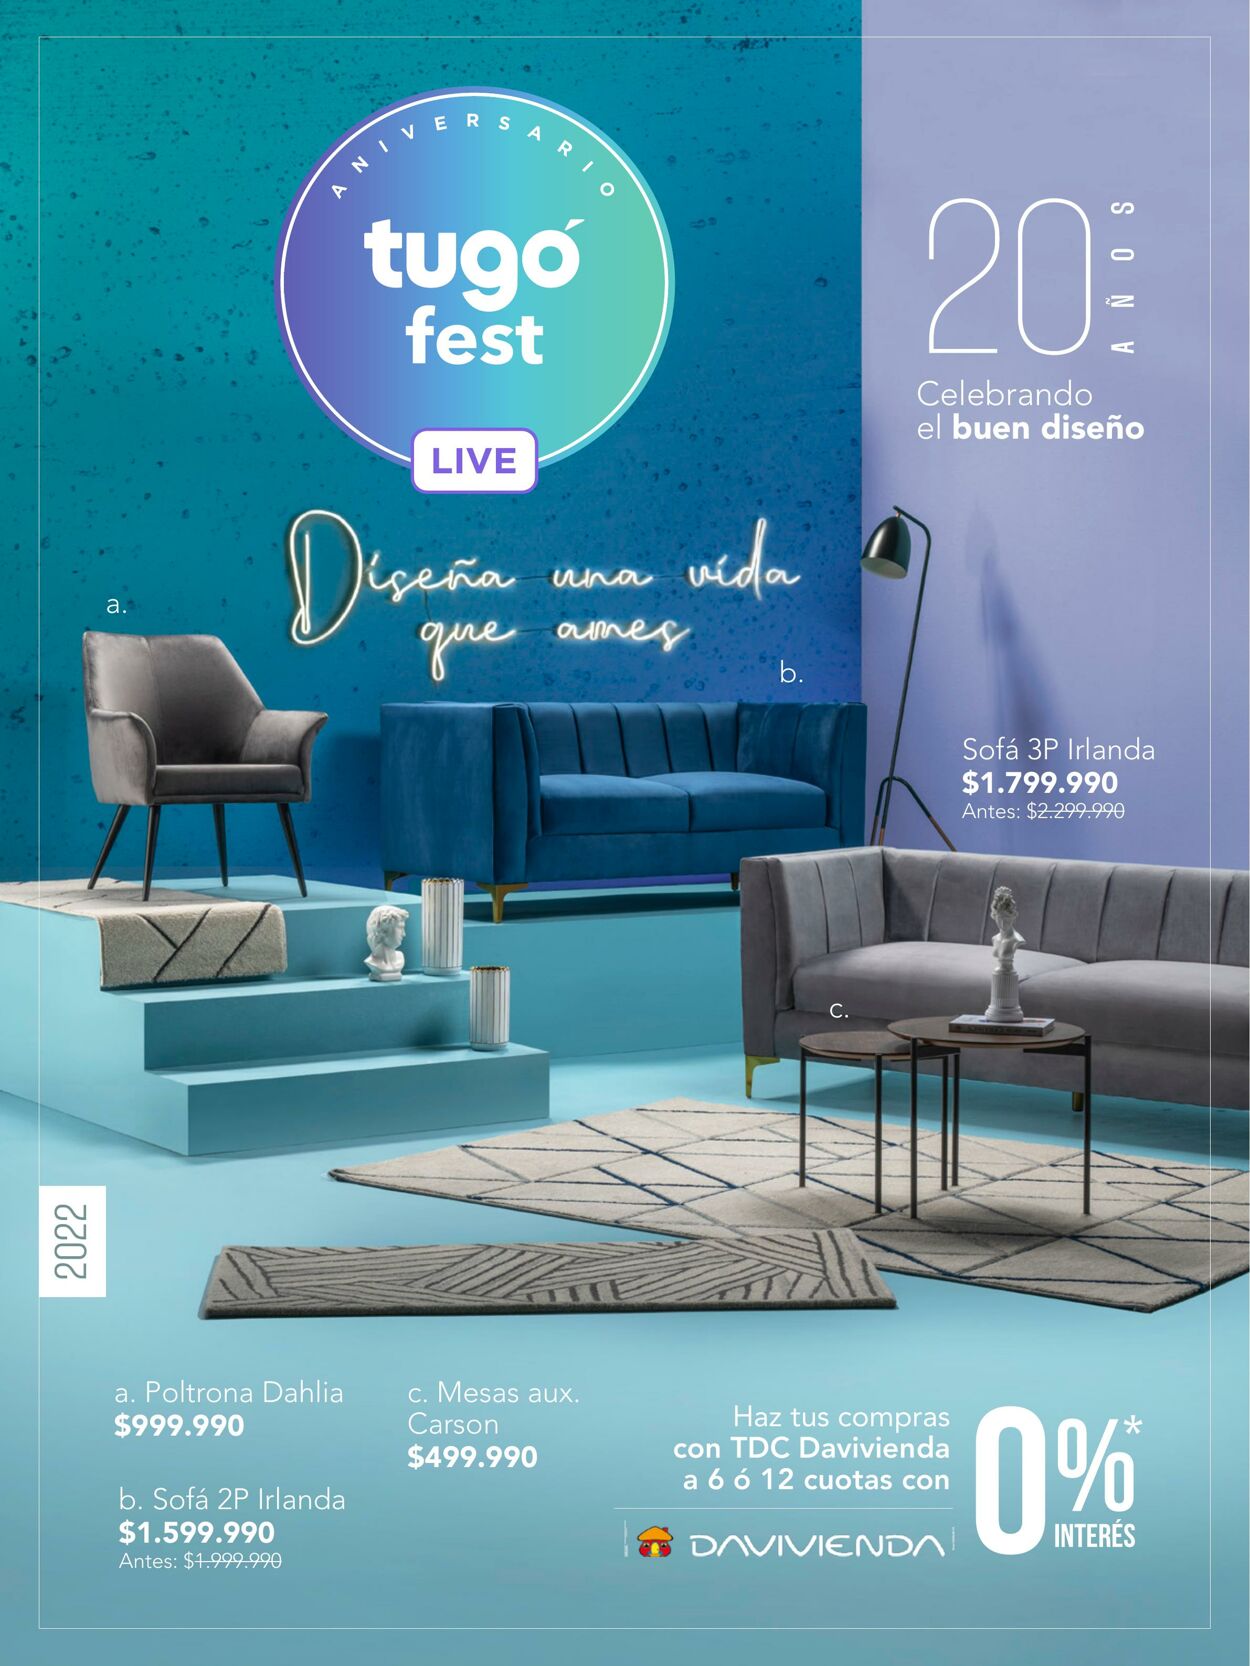 Catálogo Tugó 01.07.2022 - 31.08.2022